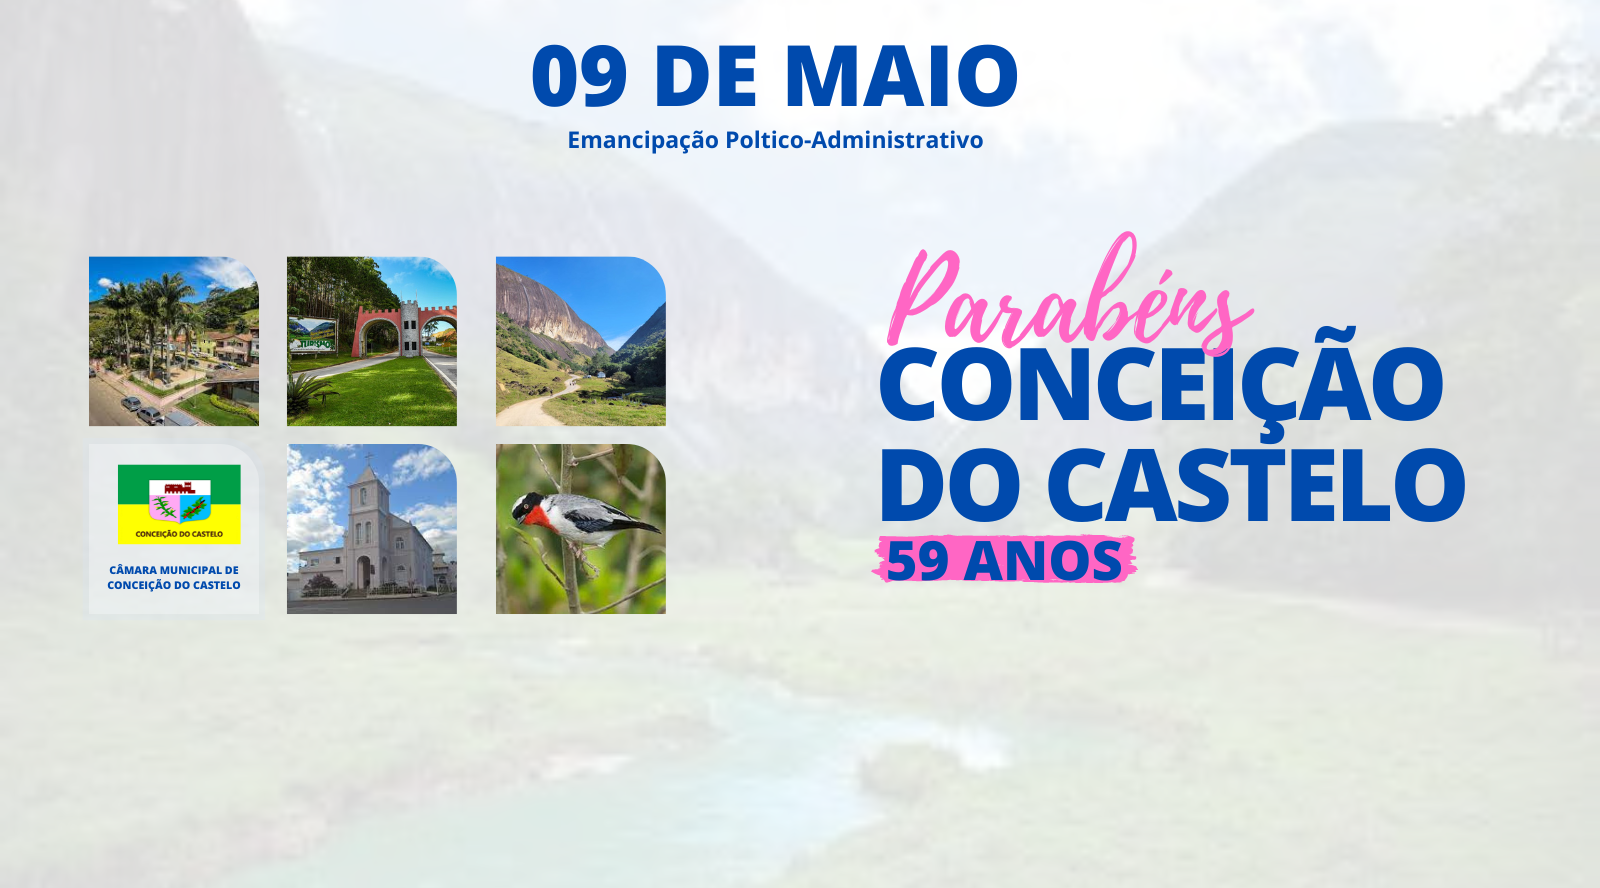 Parabéns Conceição do Castelo!